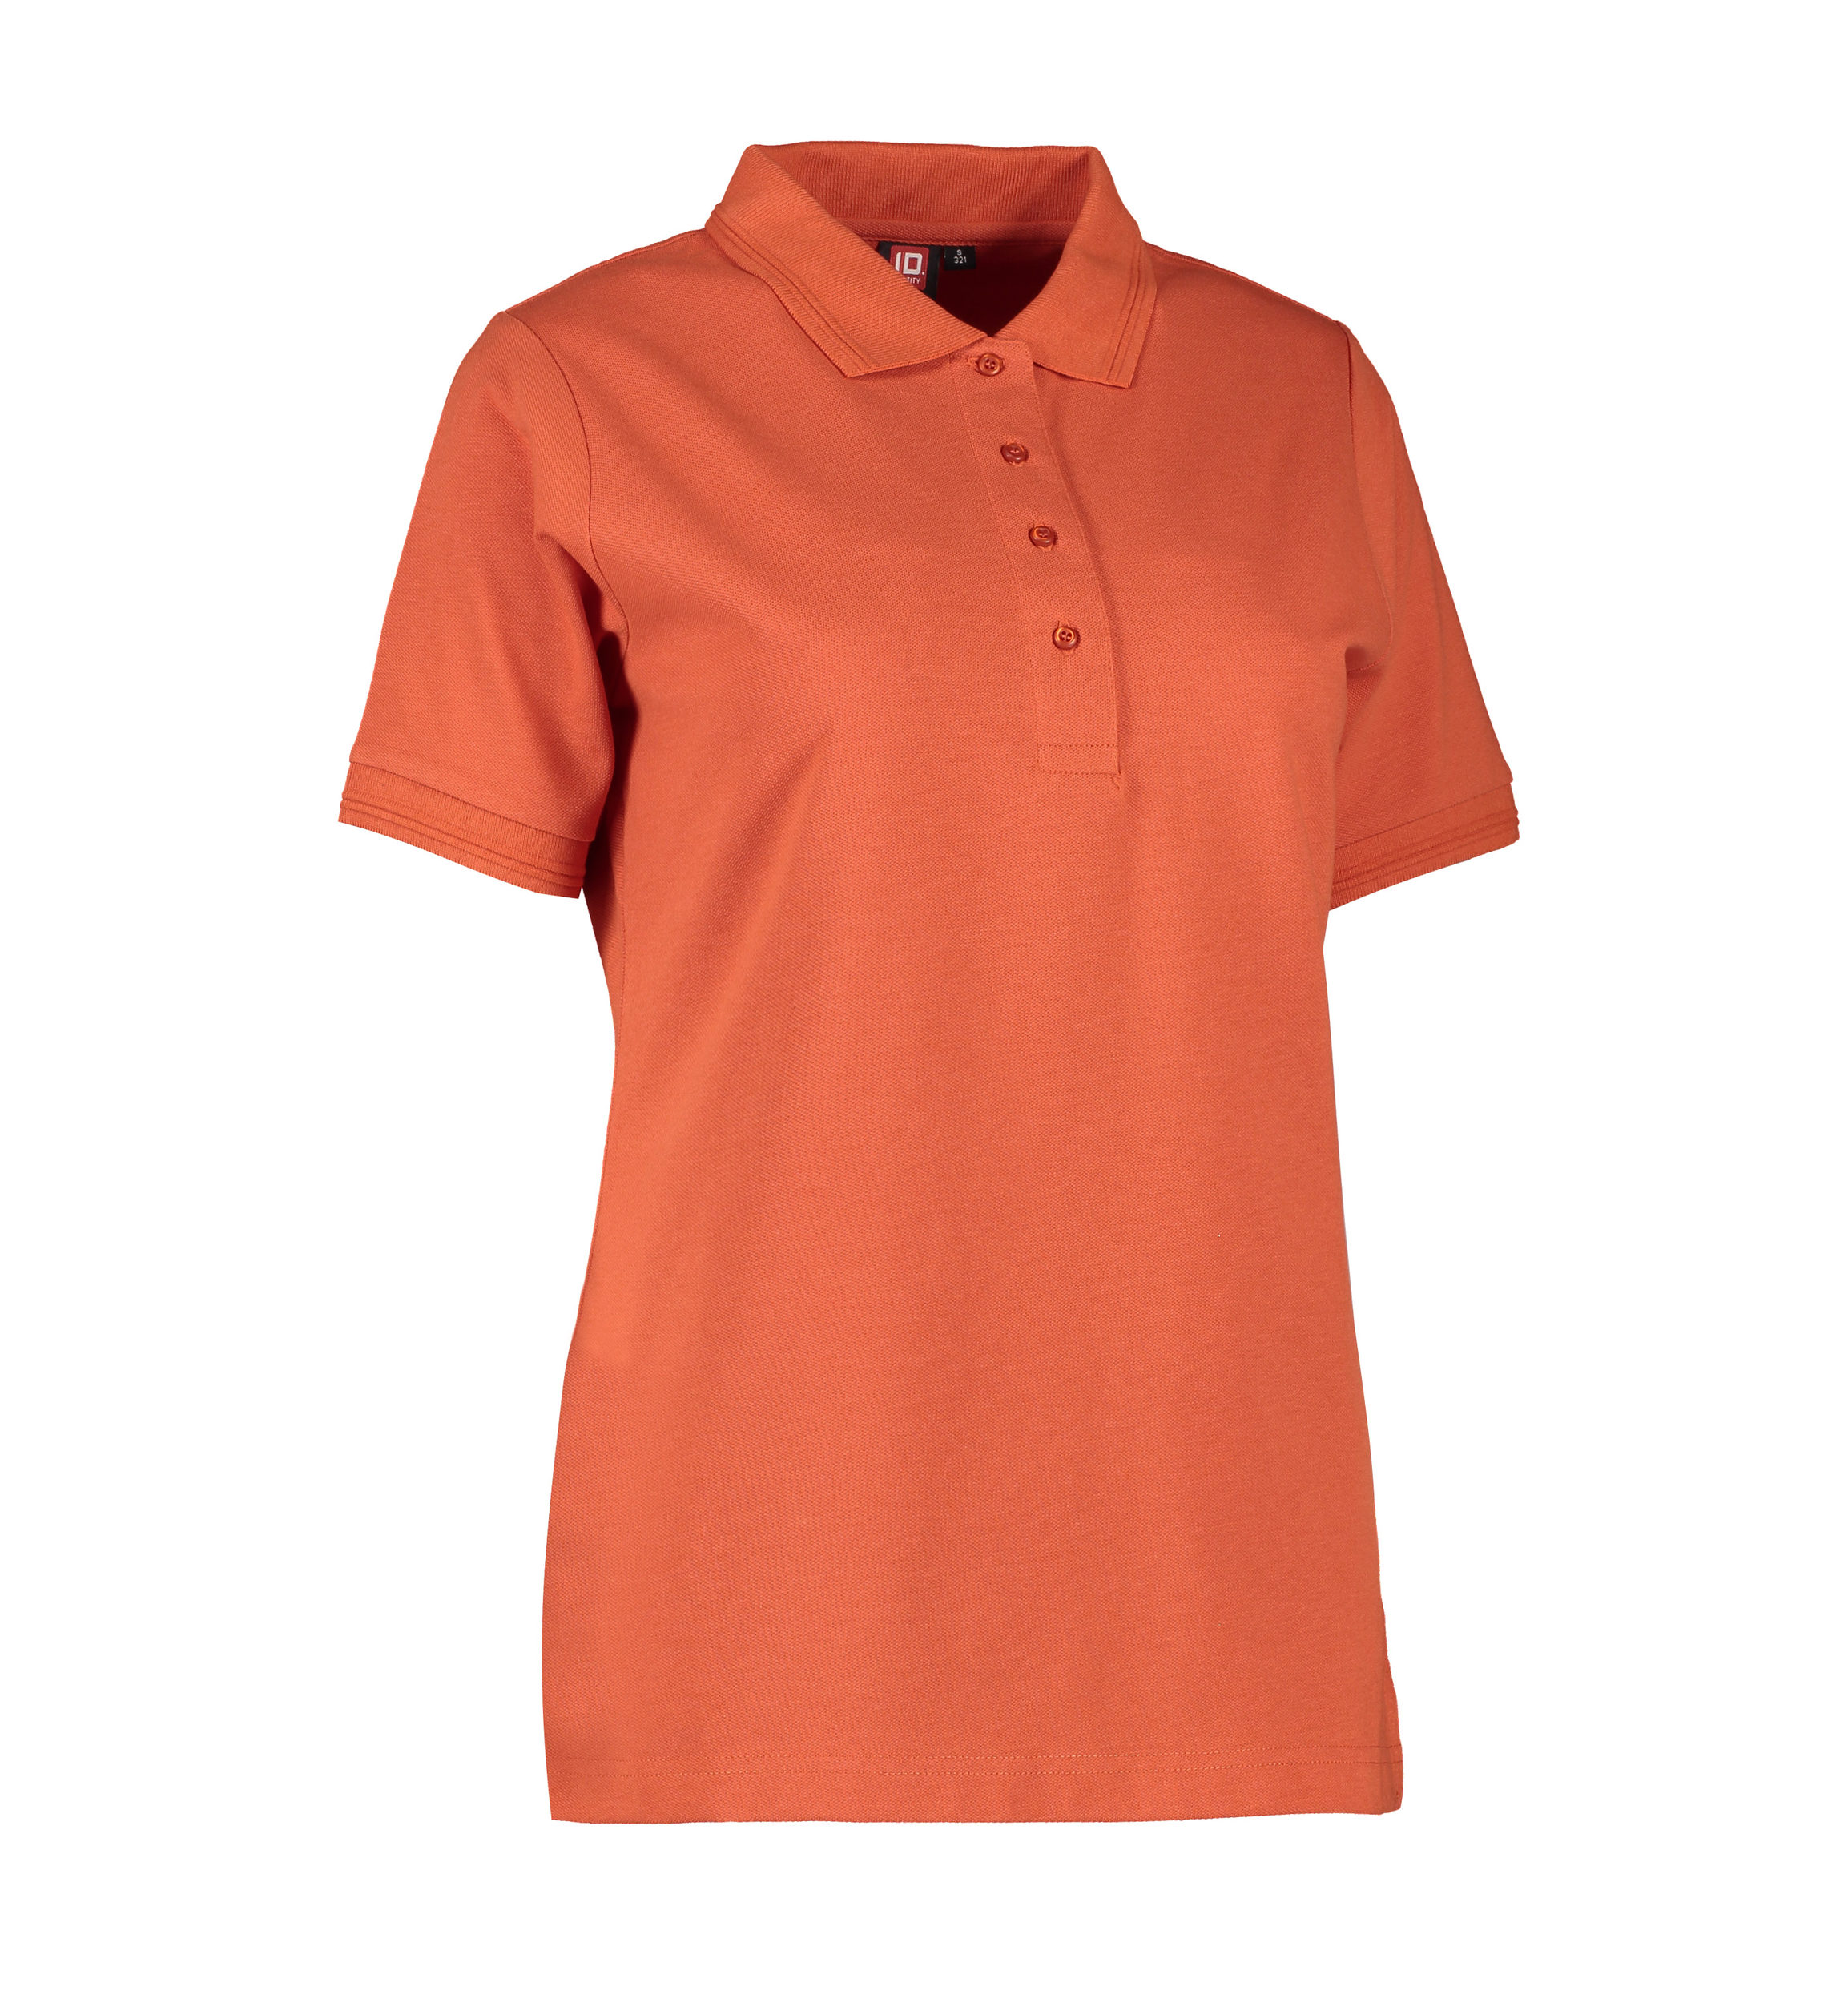 Billede af Koral farvet dame polo t-shirt i slidstærkt materiale - 3XL hos Sygeplejebutikken.dk